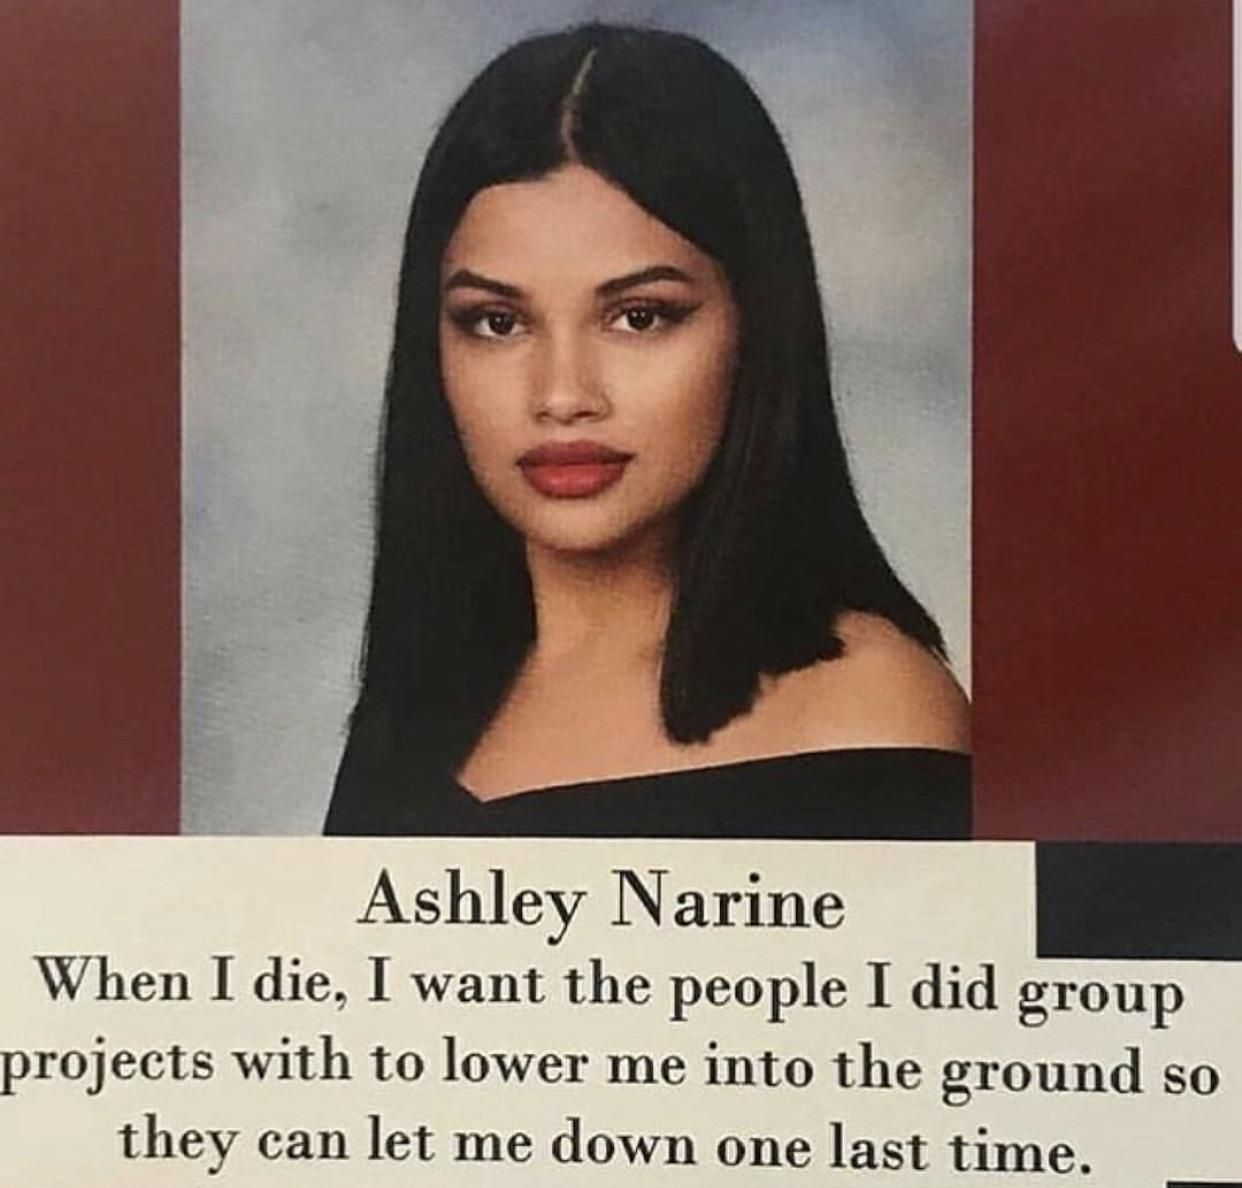 We feel you Ashley